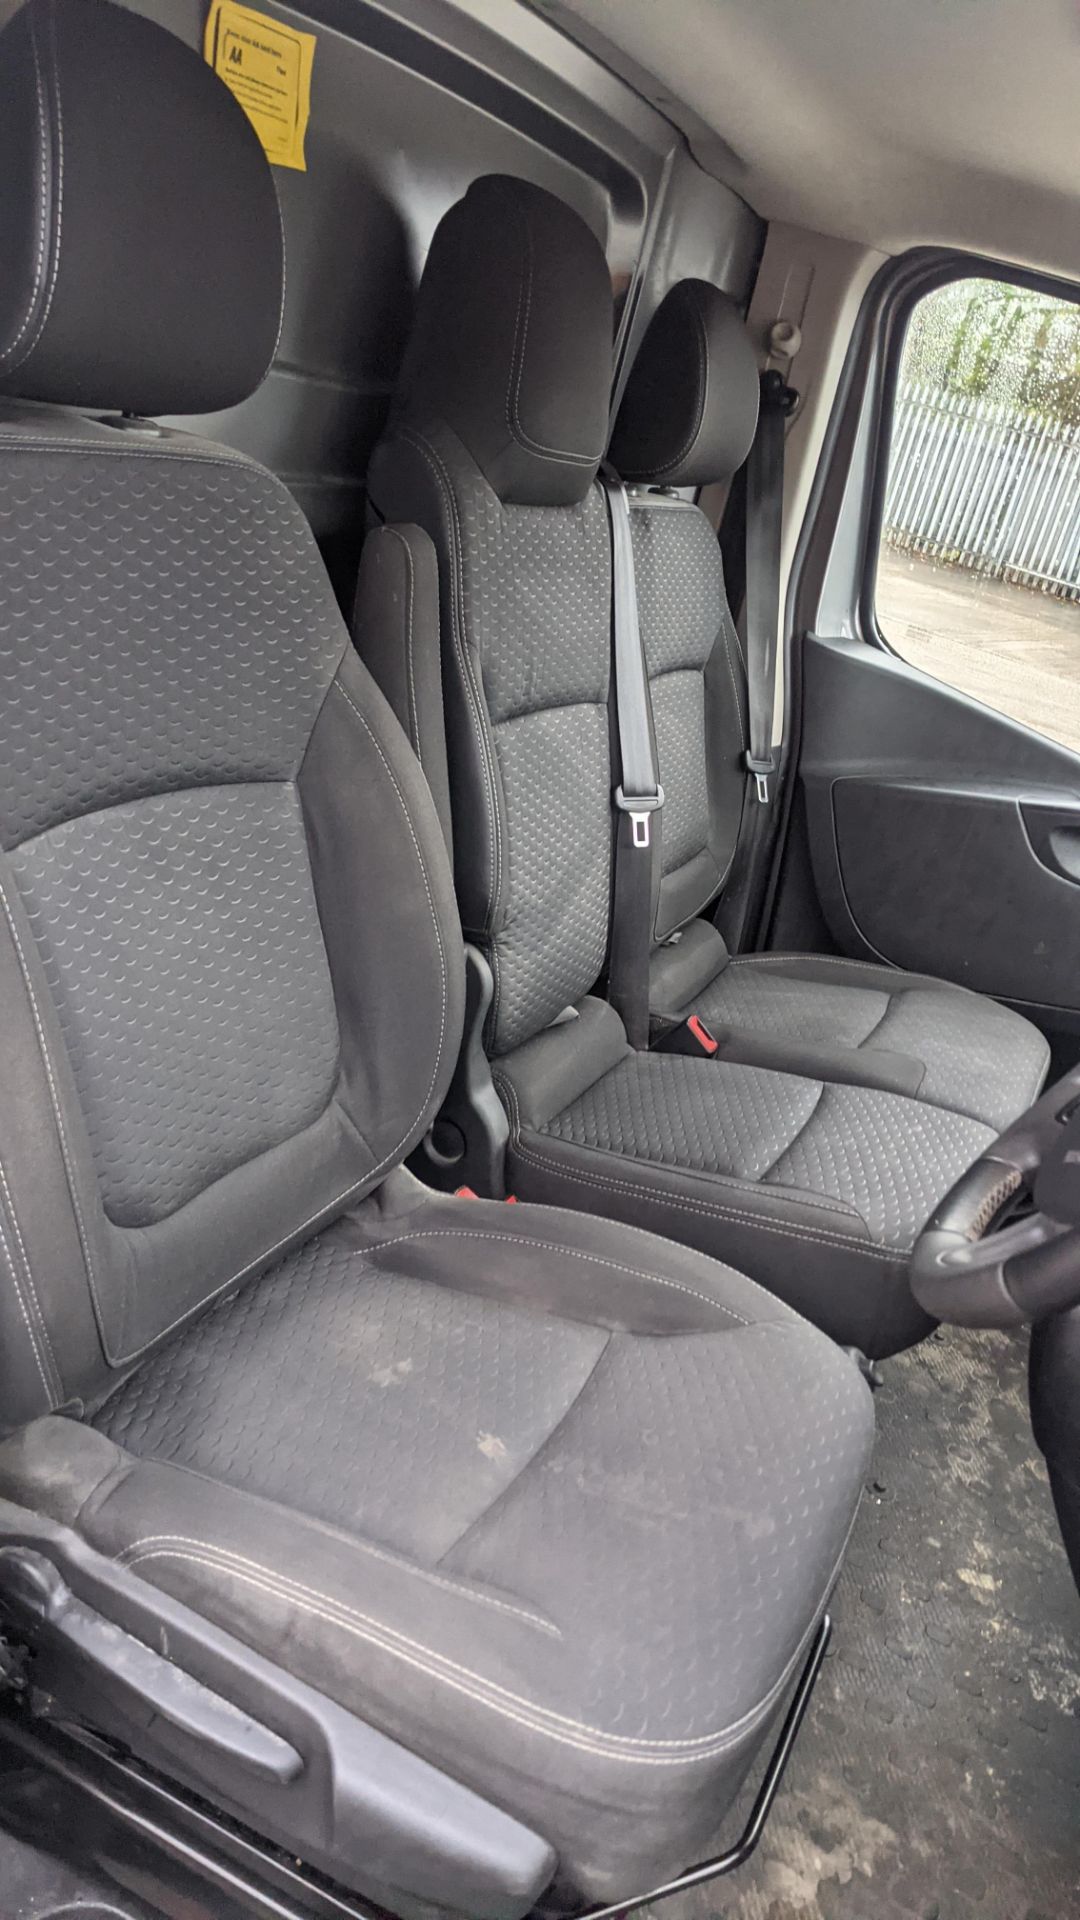 2019 Vauxhall Vivaro L2 2900 Sport CDTI BT SS panel van (Registration FD19 YTG) - Image 23 of 42